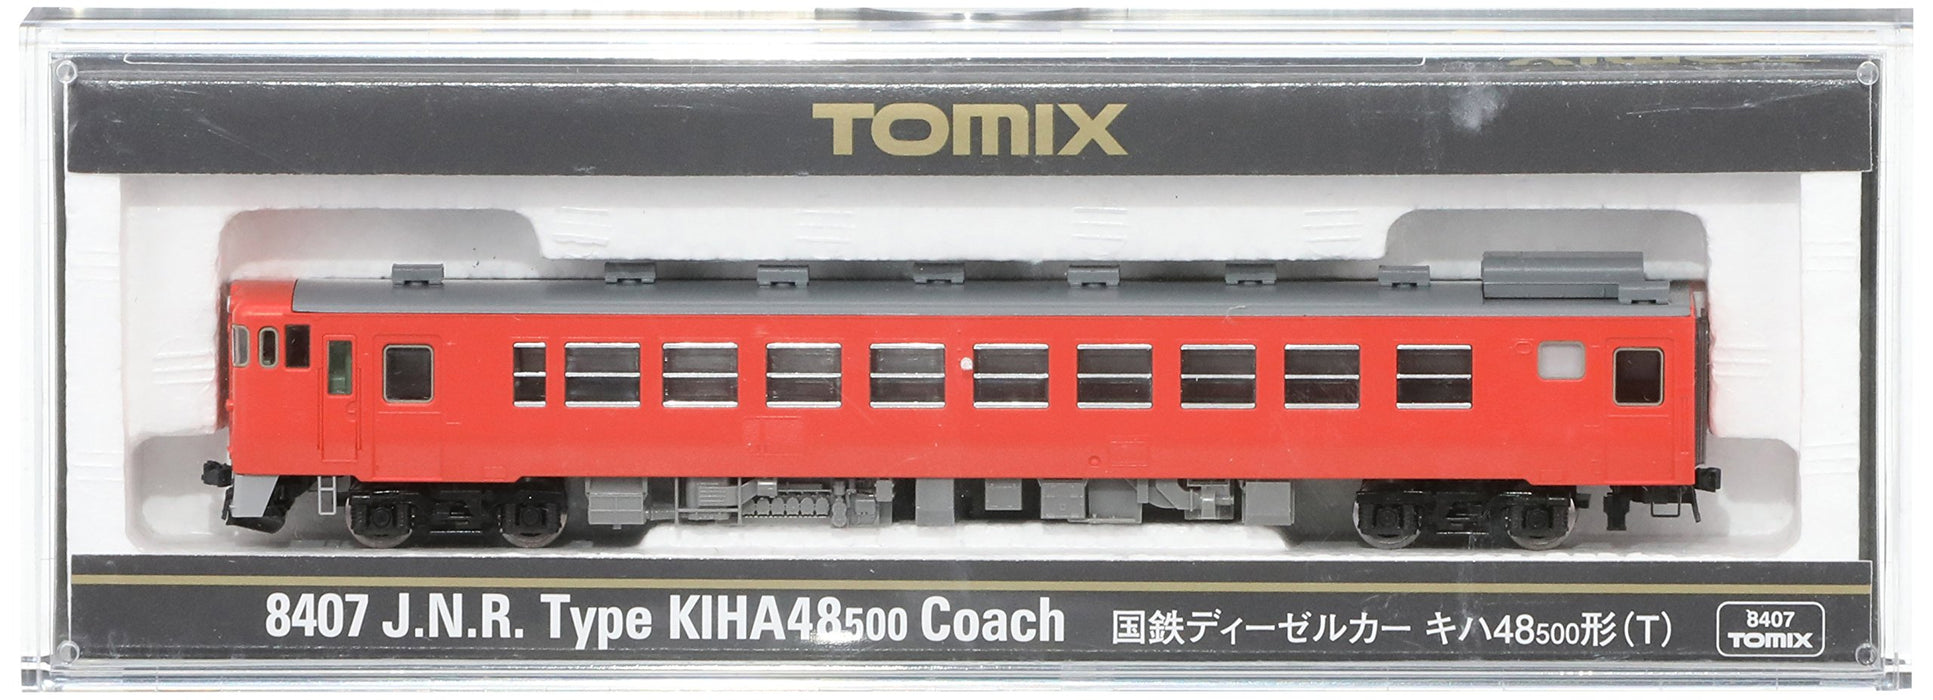 Tomytec Tomix N Gauge Kiha48-500 T 8407 Diesel Railway Model Car